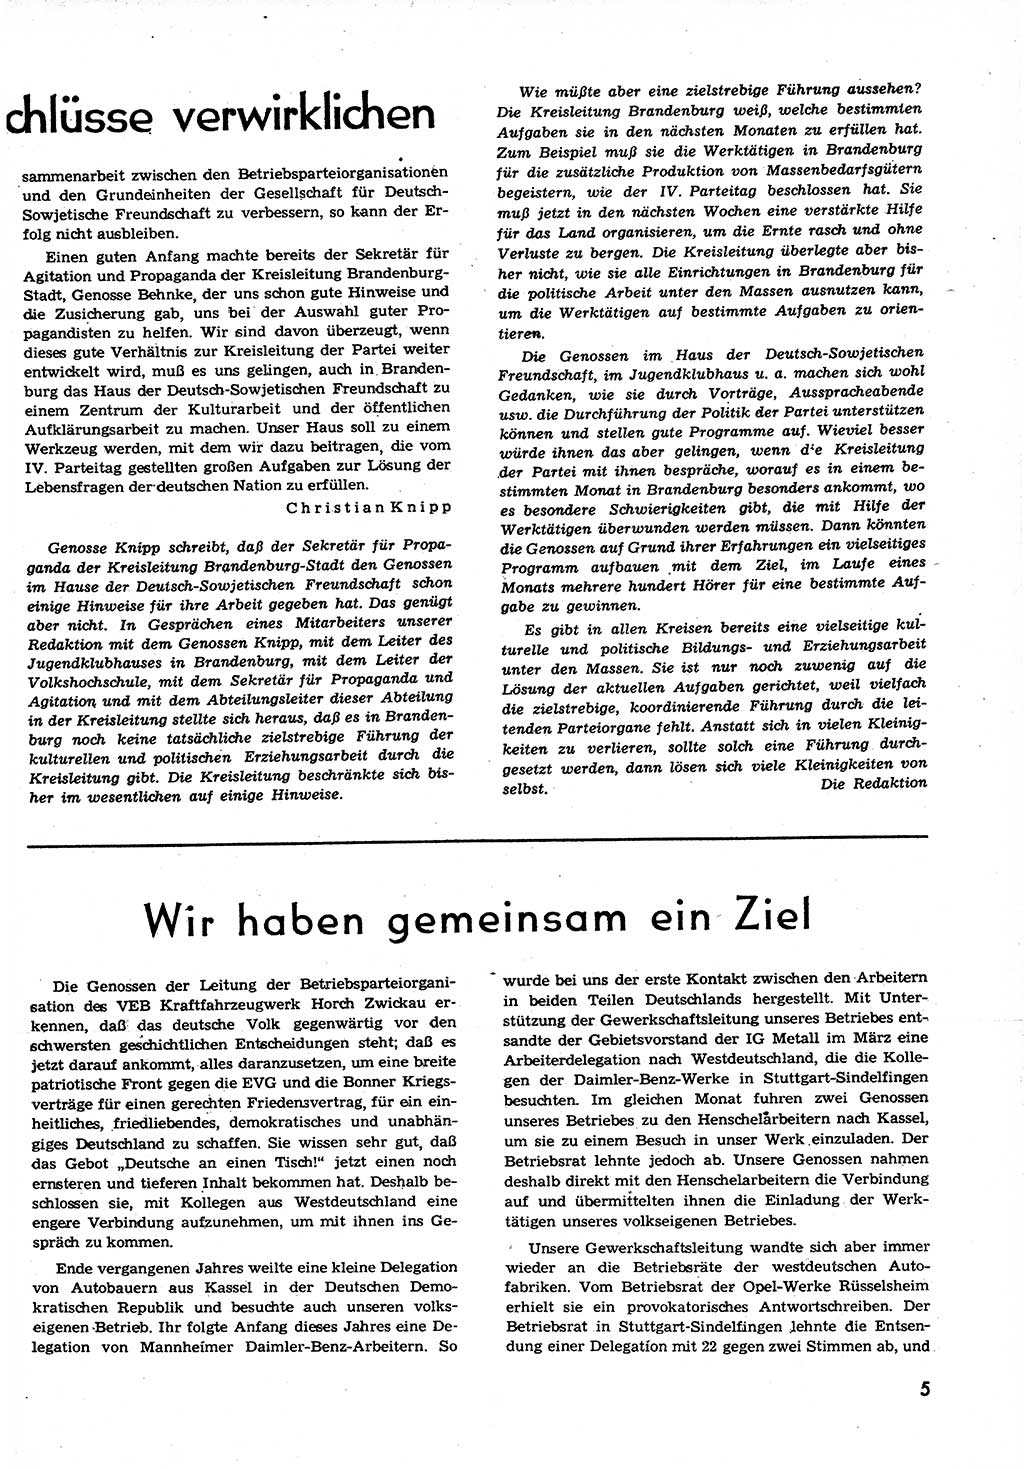 Neuer Weg (NW), Organ des Zentralkomitees (ZK) der SED (Sozialistische Einheitspartei Deutschlands) für alle Parteiarbeiter, 9. Jahrgang [Deutsche Demokratische Republik (DDR)] 1954, Heft 12/5 (NW ZK SED DDR 1954, H. 12/5)